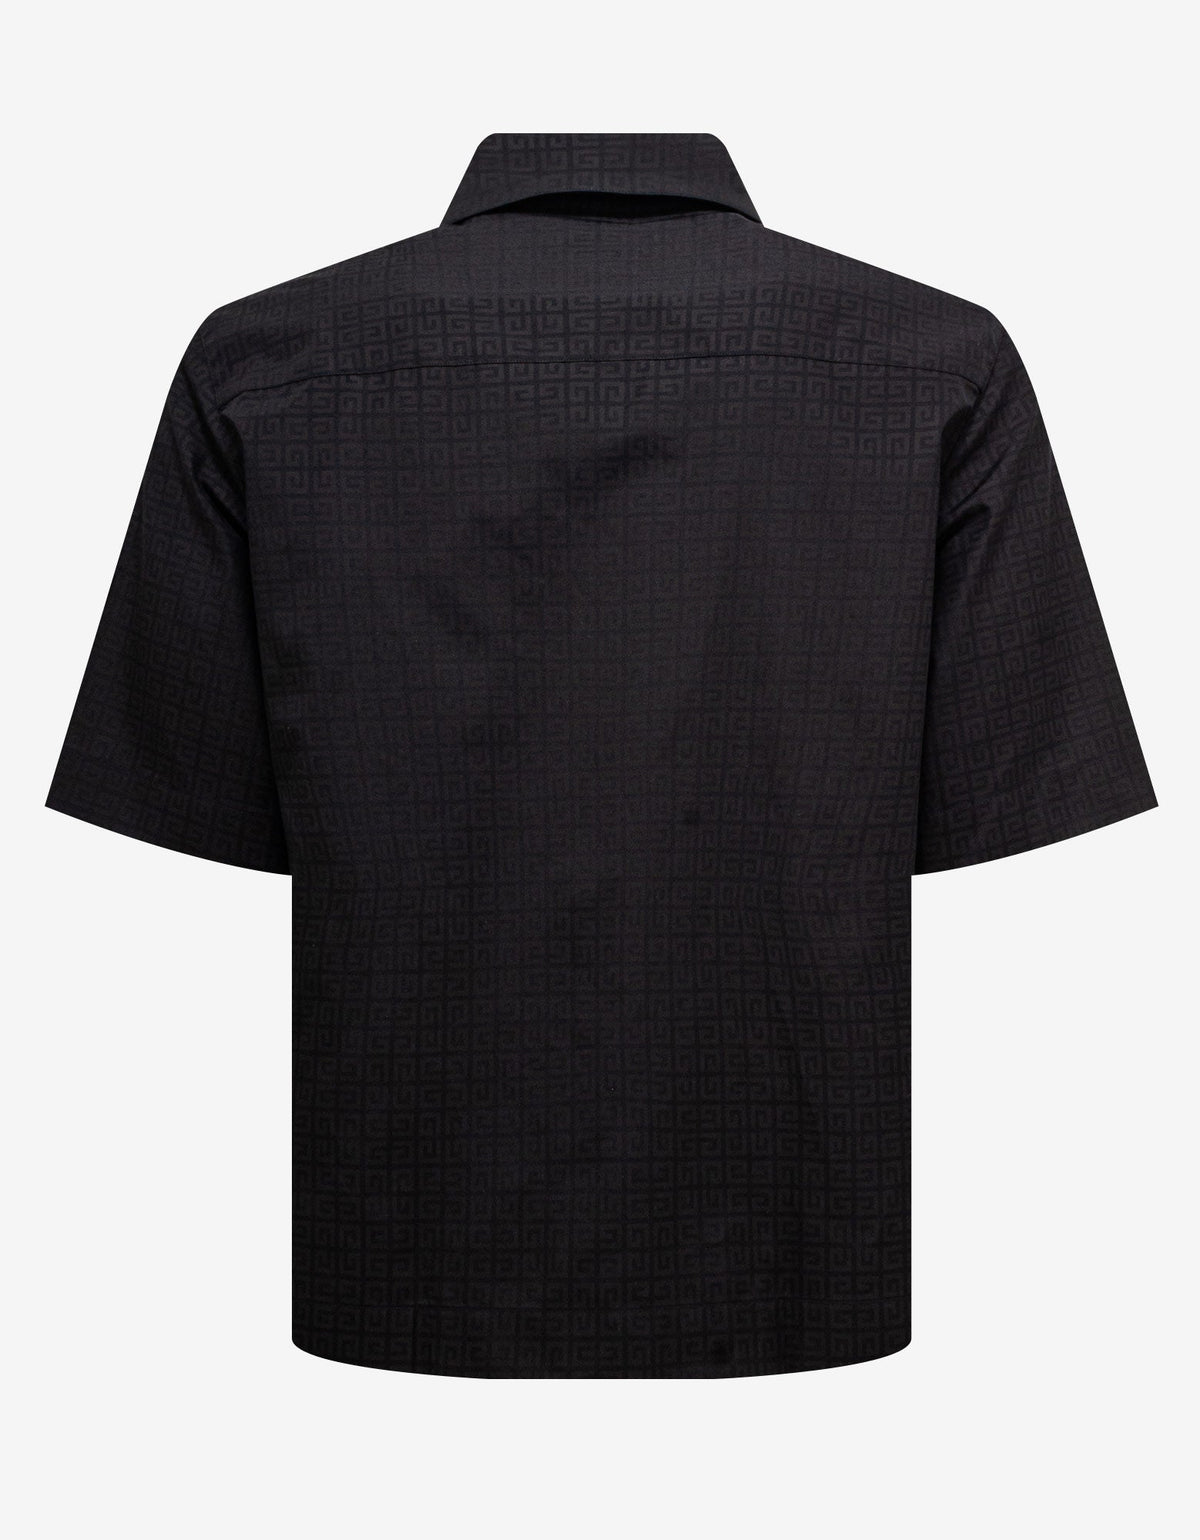 Givenchy Black 4G Jacquard Zipped Shirt